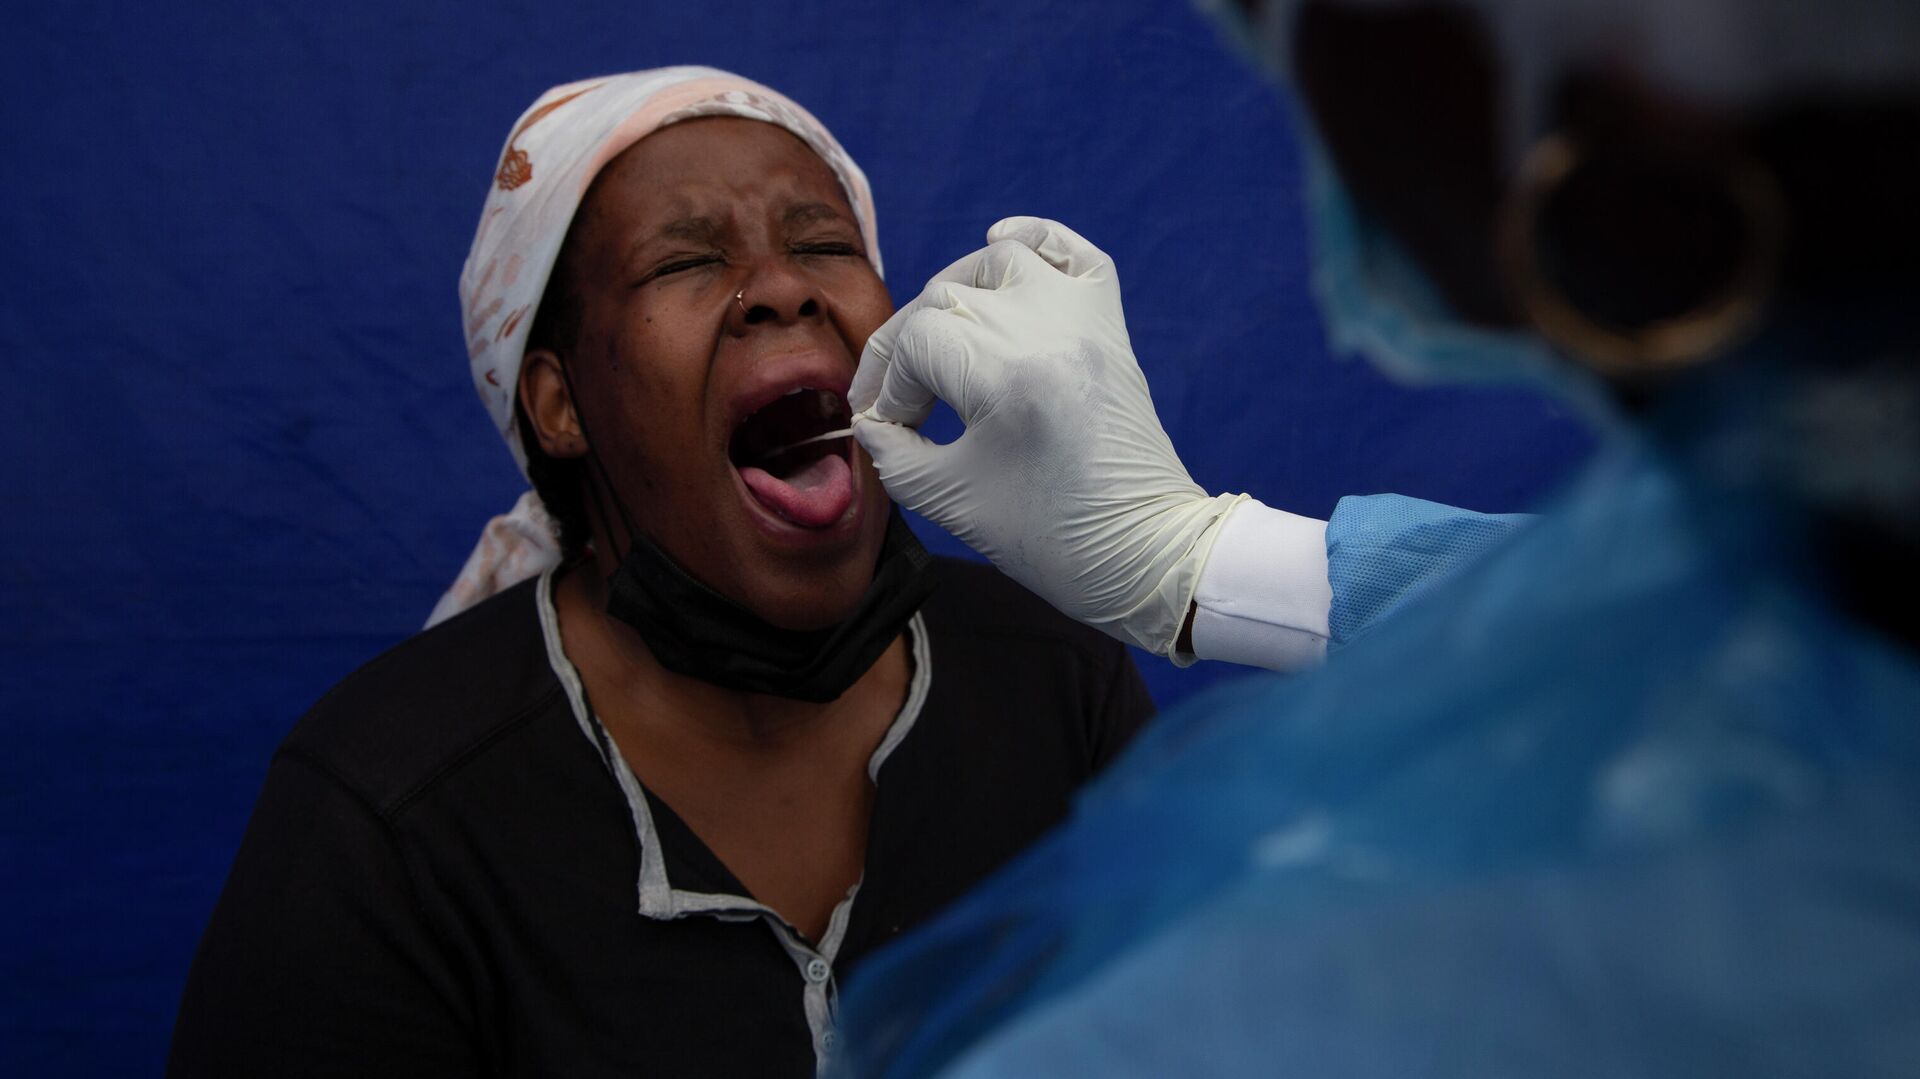 У пациента взят мазок из горла для проверки на COVID-19 в Соуэто, Южная Африка - РИА Новости, 1920, 06.12.2021